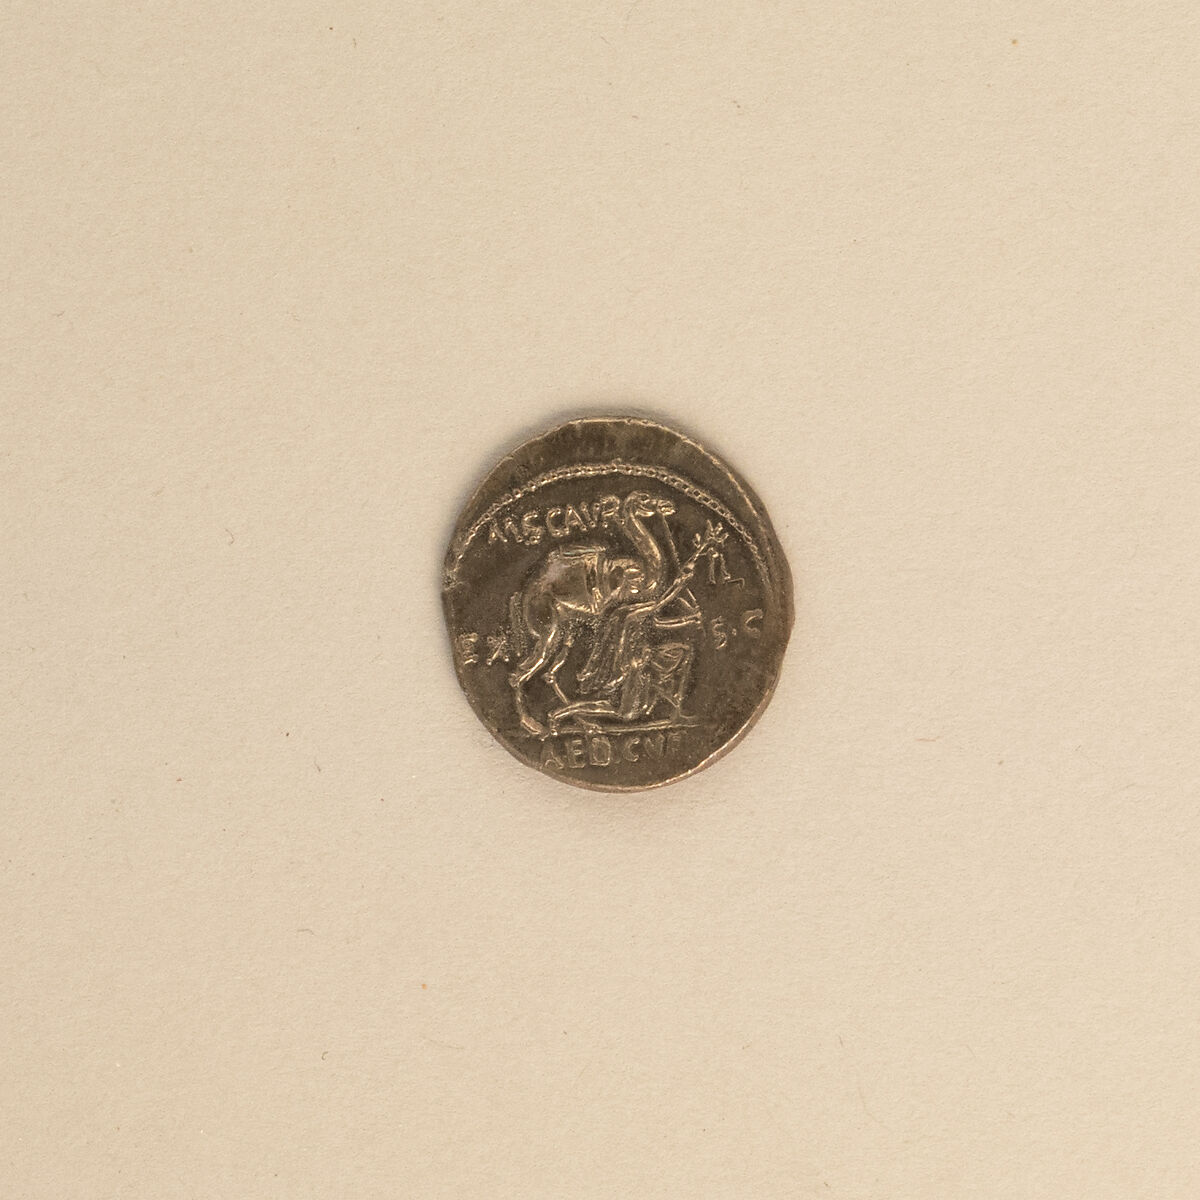 Silver denarius of Aemilius Scaurus, Silver, Roman 